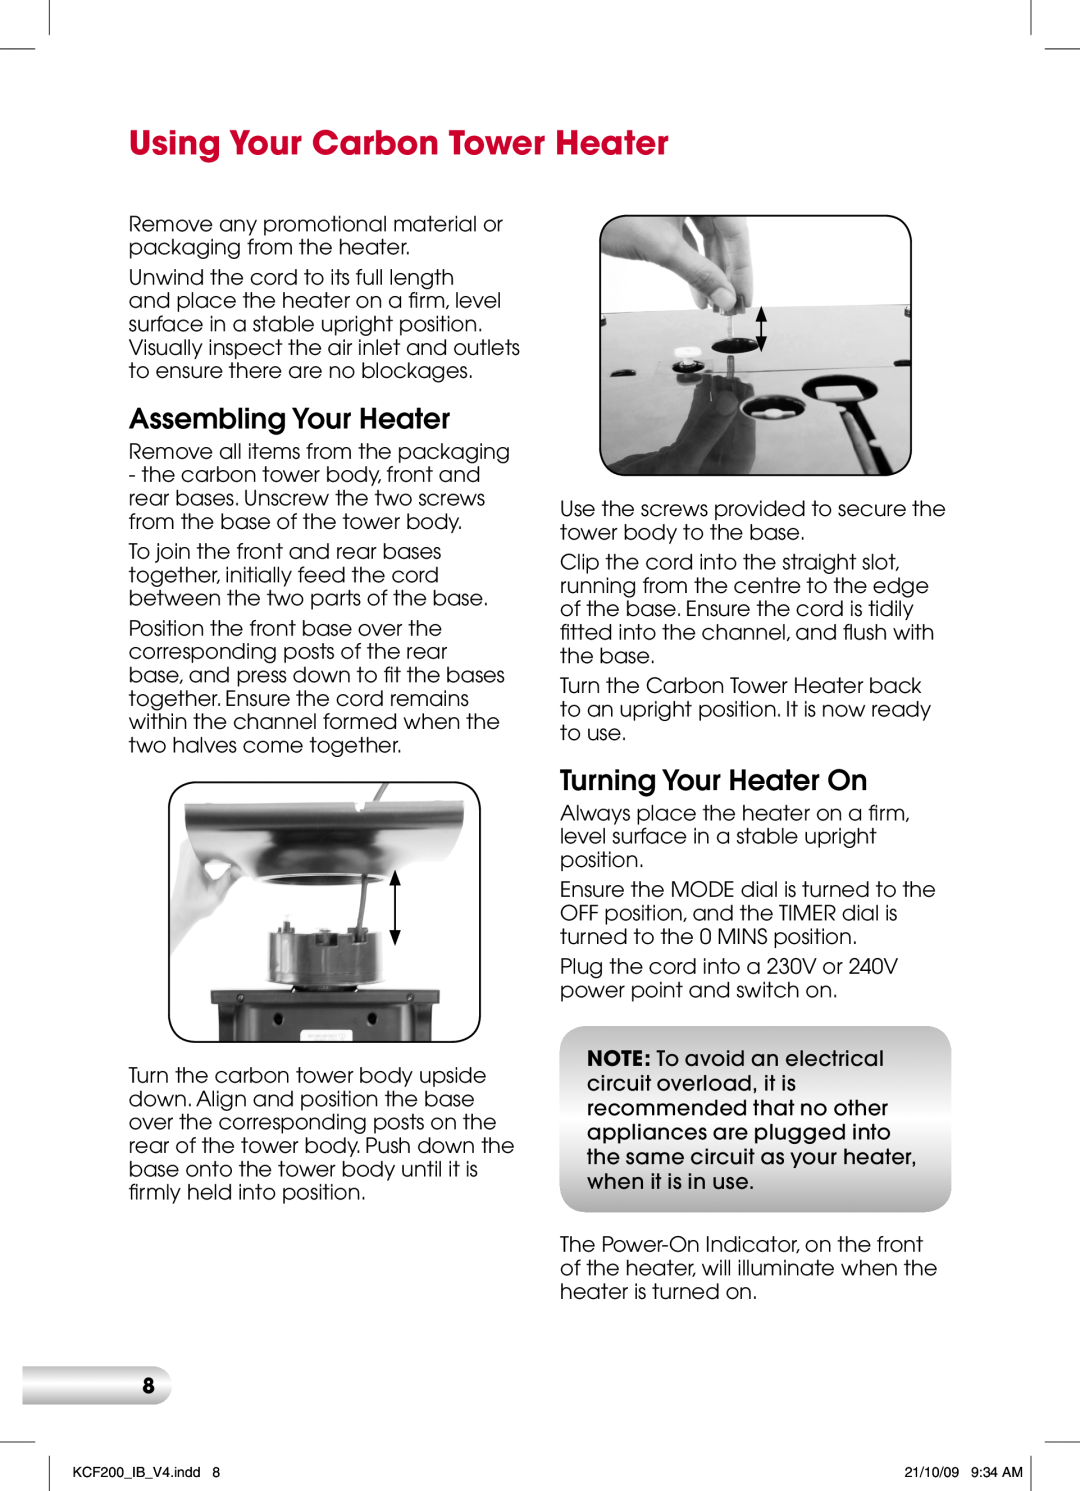 Kambrook KCF200 manual Using Your Carbon Tower Heater, Assembling Your Heater, Turning Your Heater On 